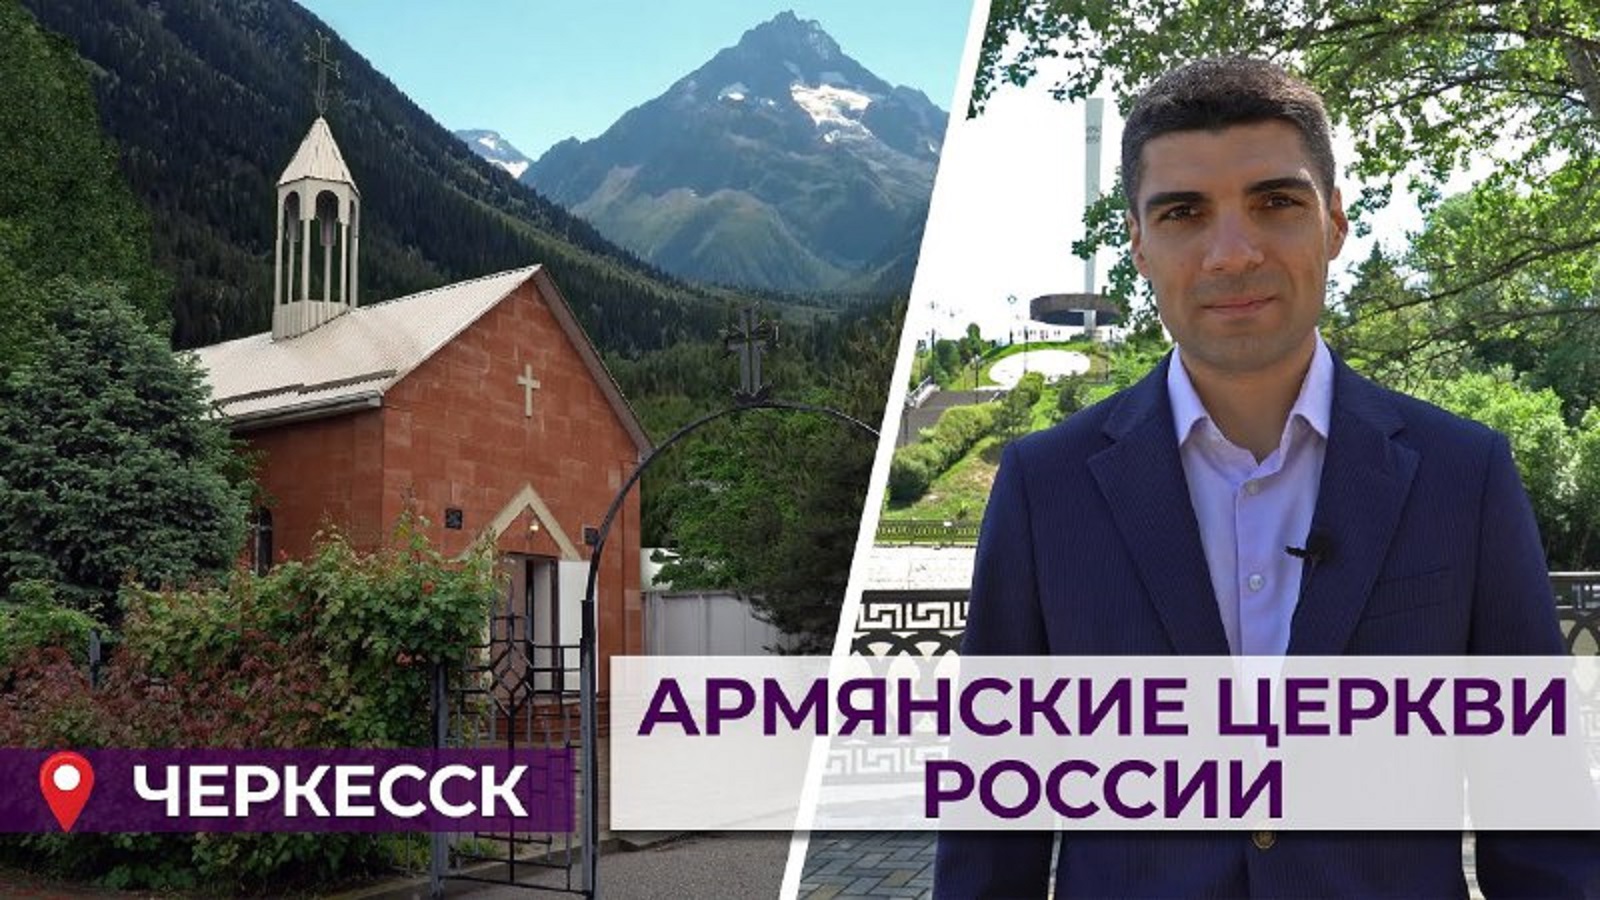 Армянские церкви России/Черкесск/ HAYK media